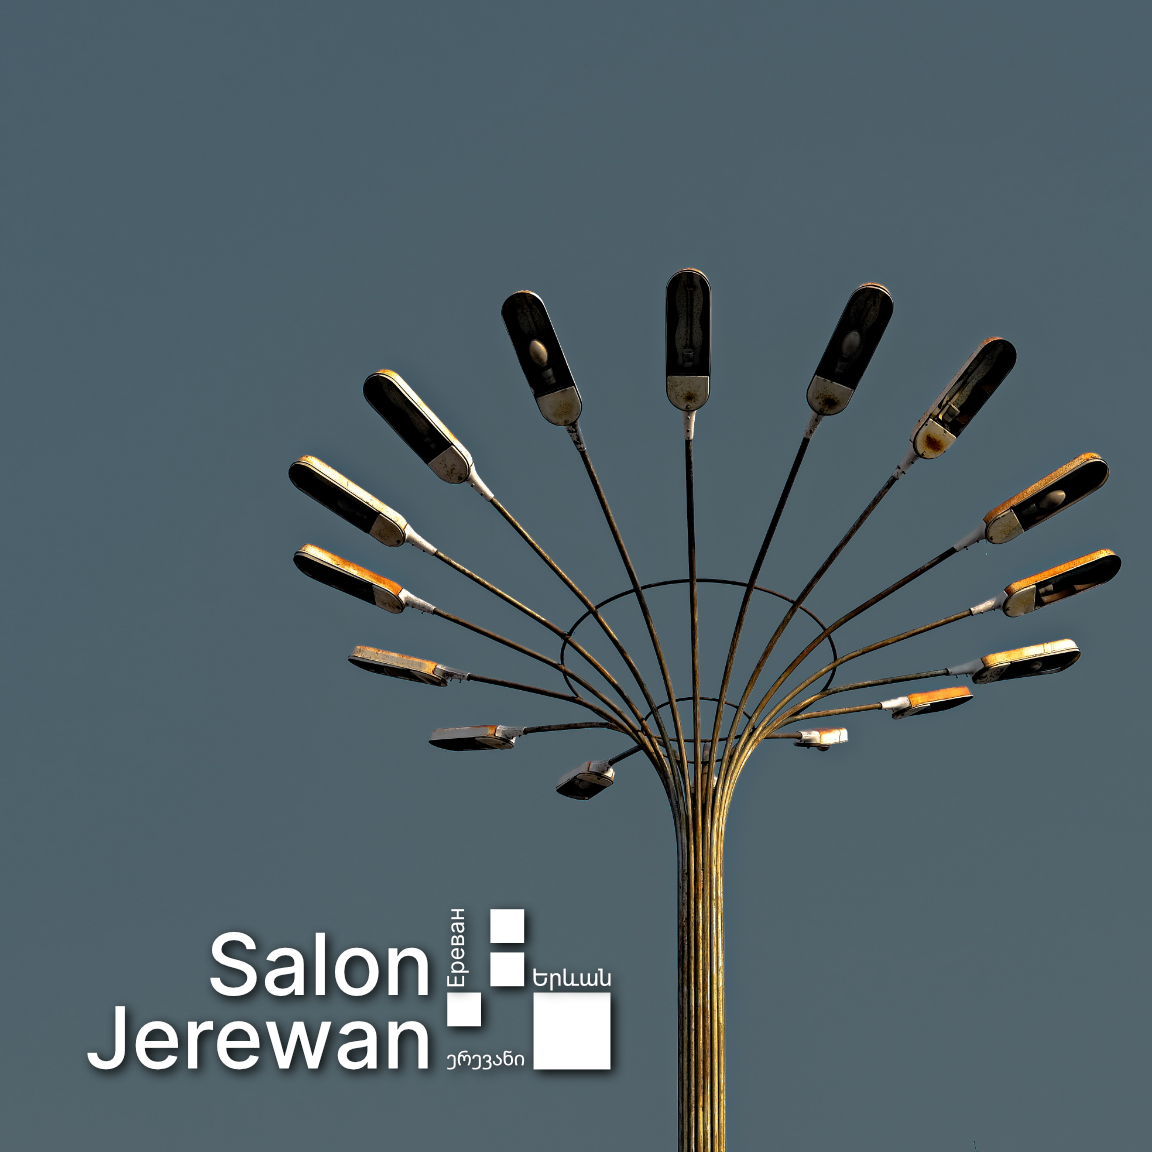 Salon Jerewan